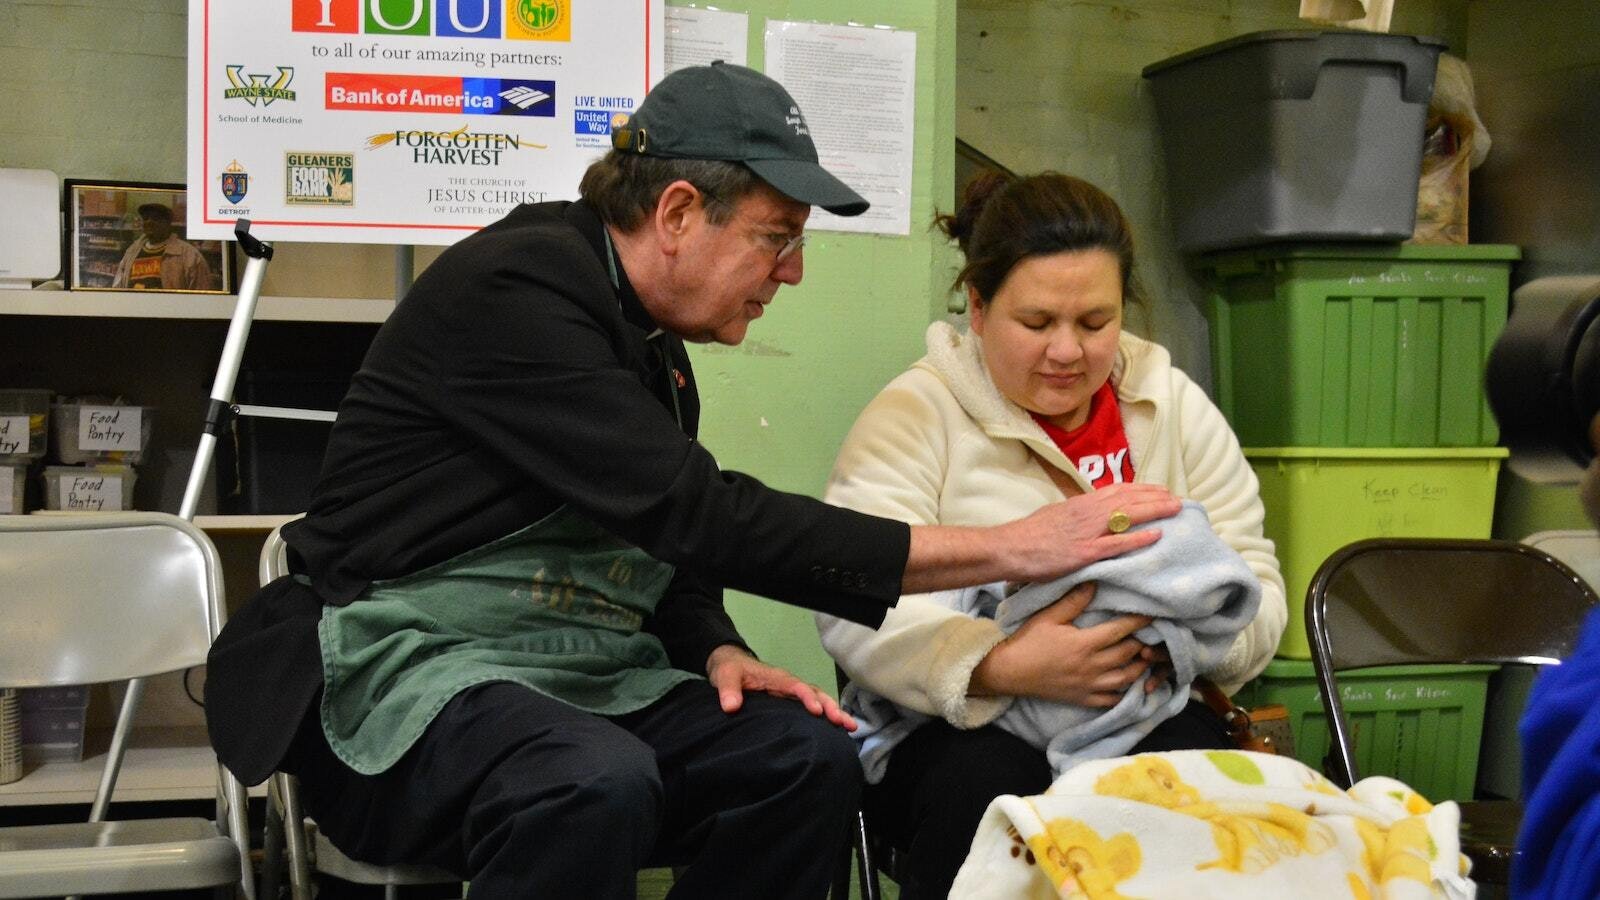 El Arzobispo Vigneron bendice a un bebé recién nacido y a su madre mientras trabaja como voluntario en All Saints Soup Kitchen and Food Pantry en el suroeste de Detroit durante la Cuaresma el 13 de febrero de 2018. (Michael Stechschulte | Foto de archivo de Detroit Catholic)